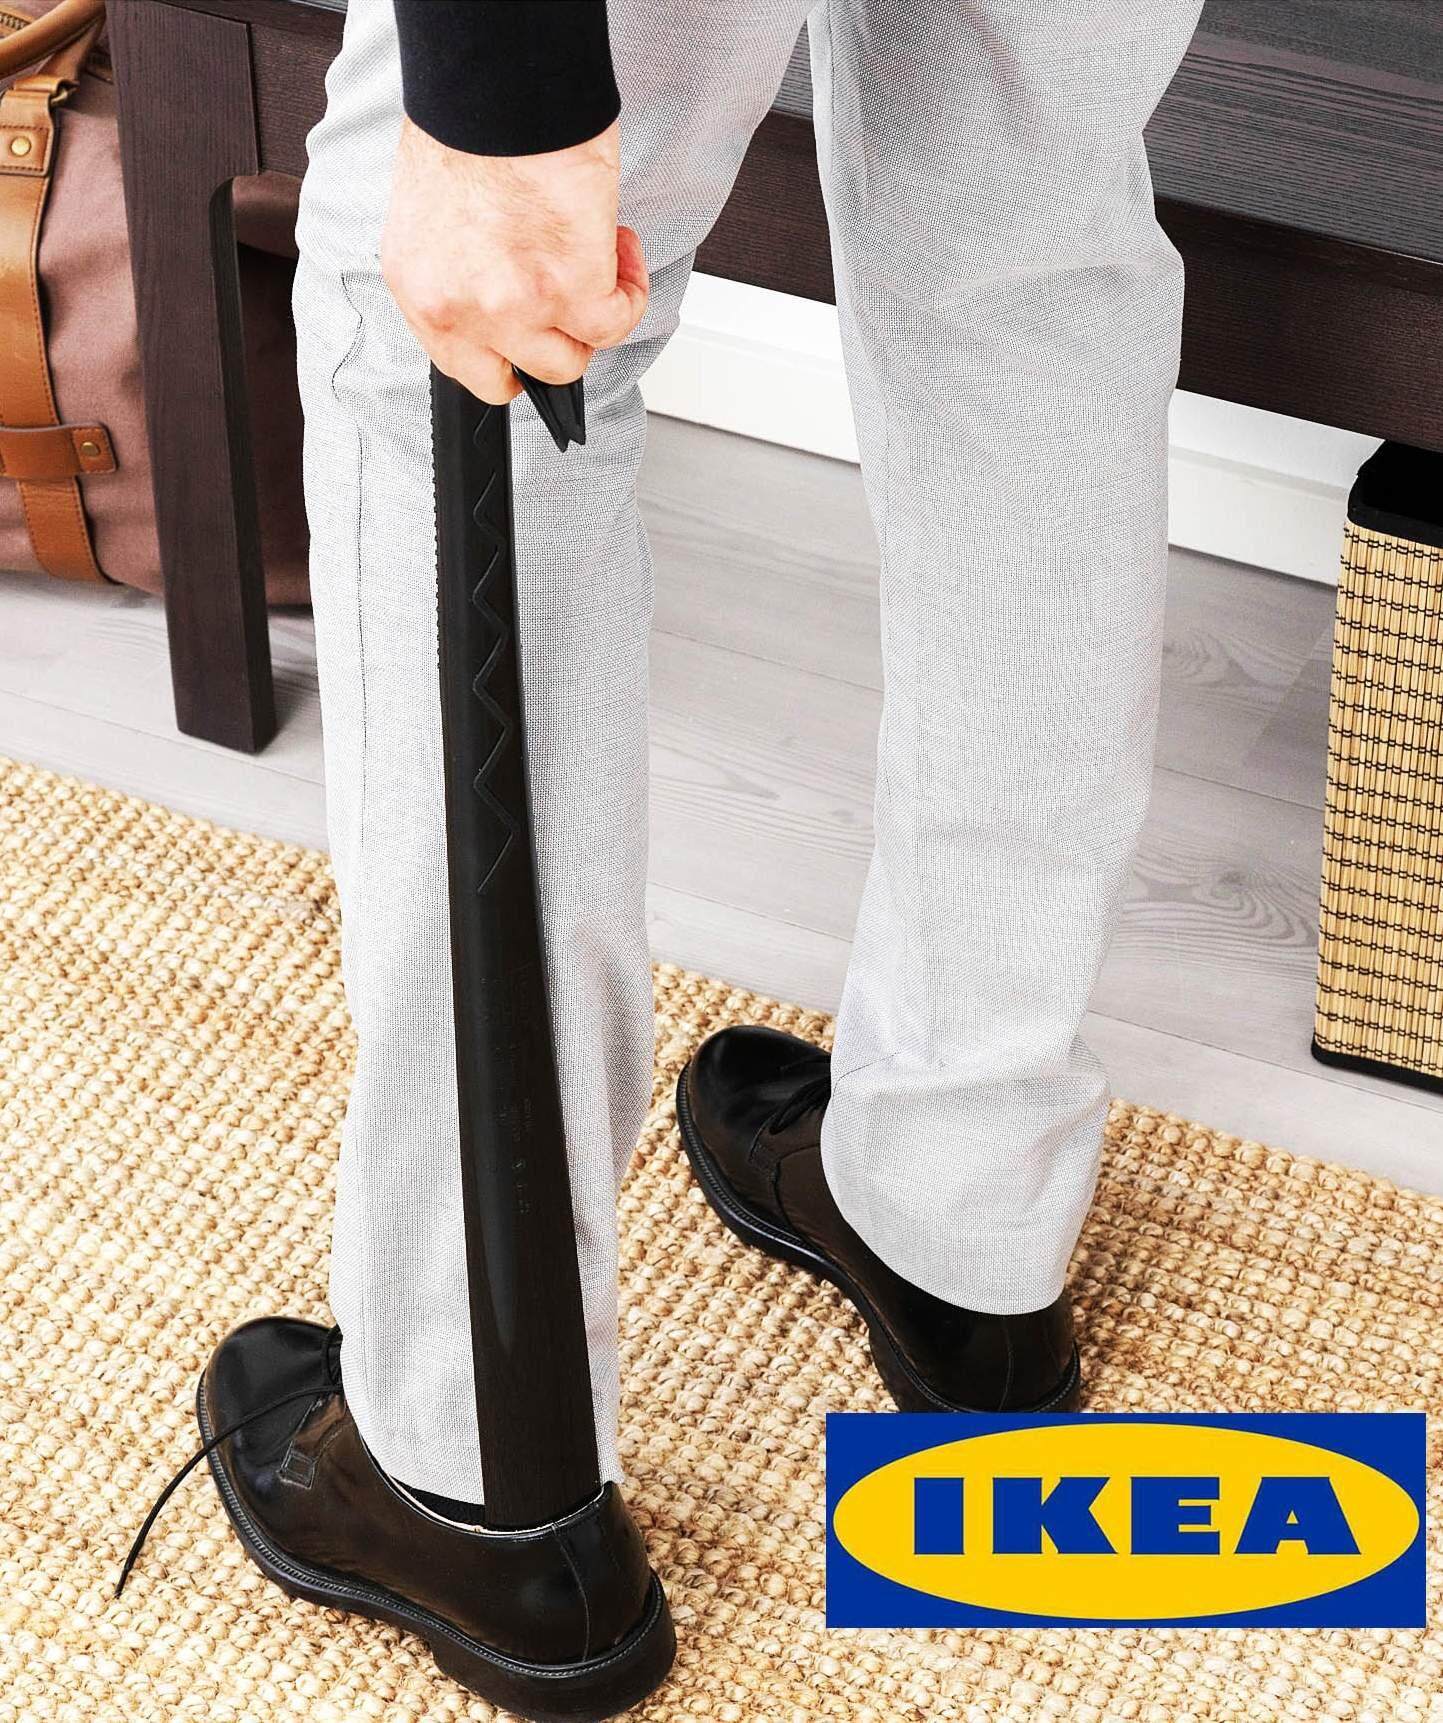 IKEA OMSORG ที่ช้อนรองเท้า ใส่รองเท้าไม่ต้องก้มให้เมื่อย